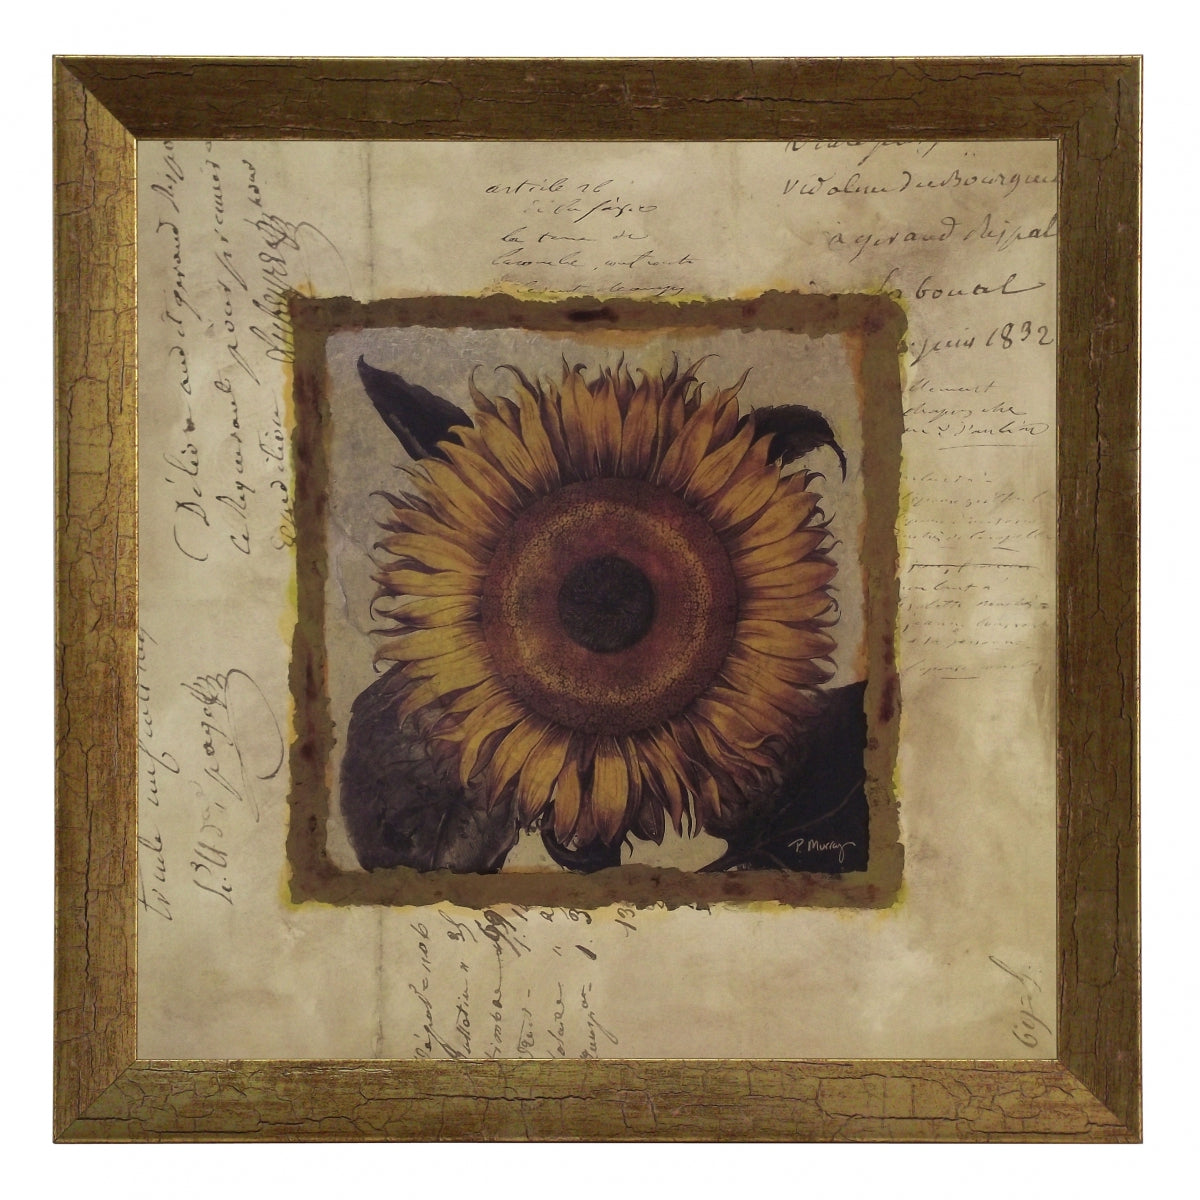 Obraz - Złota kolekcja - kwiaty, słonecznik - reprodukcja A2560 w ramie 30x30 cm. - Obrazy Reprodukcje Ramy | ergopaul.pl